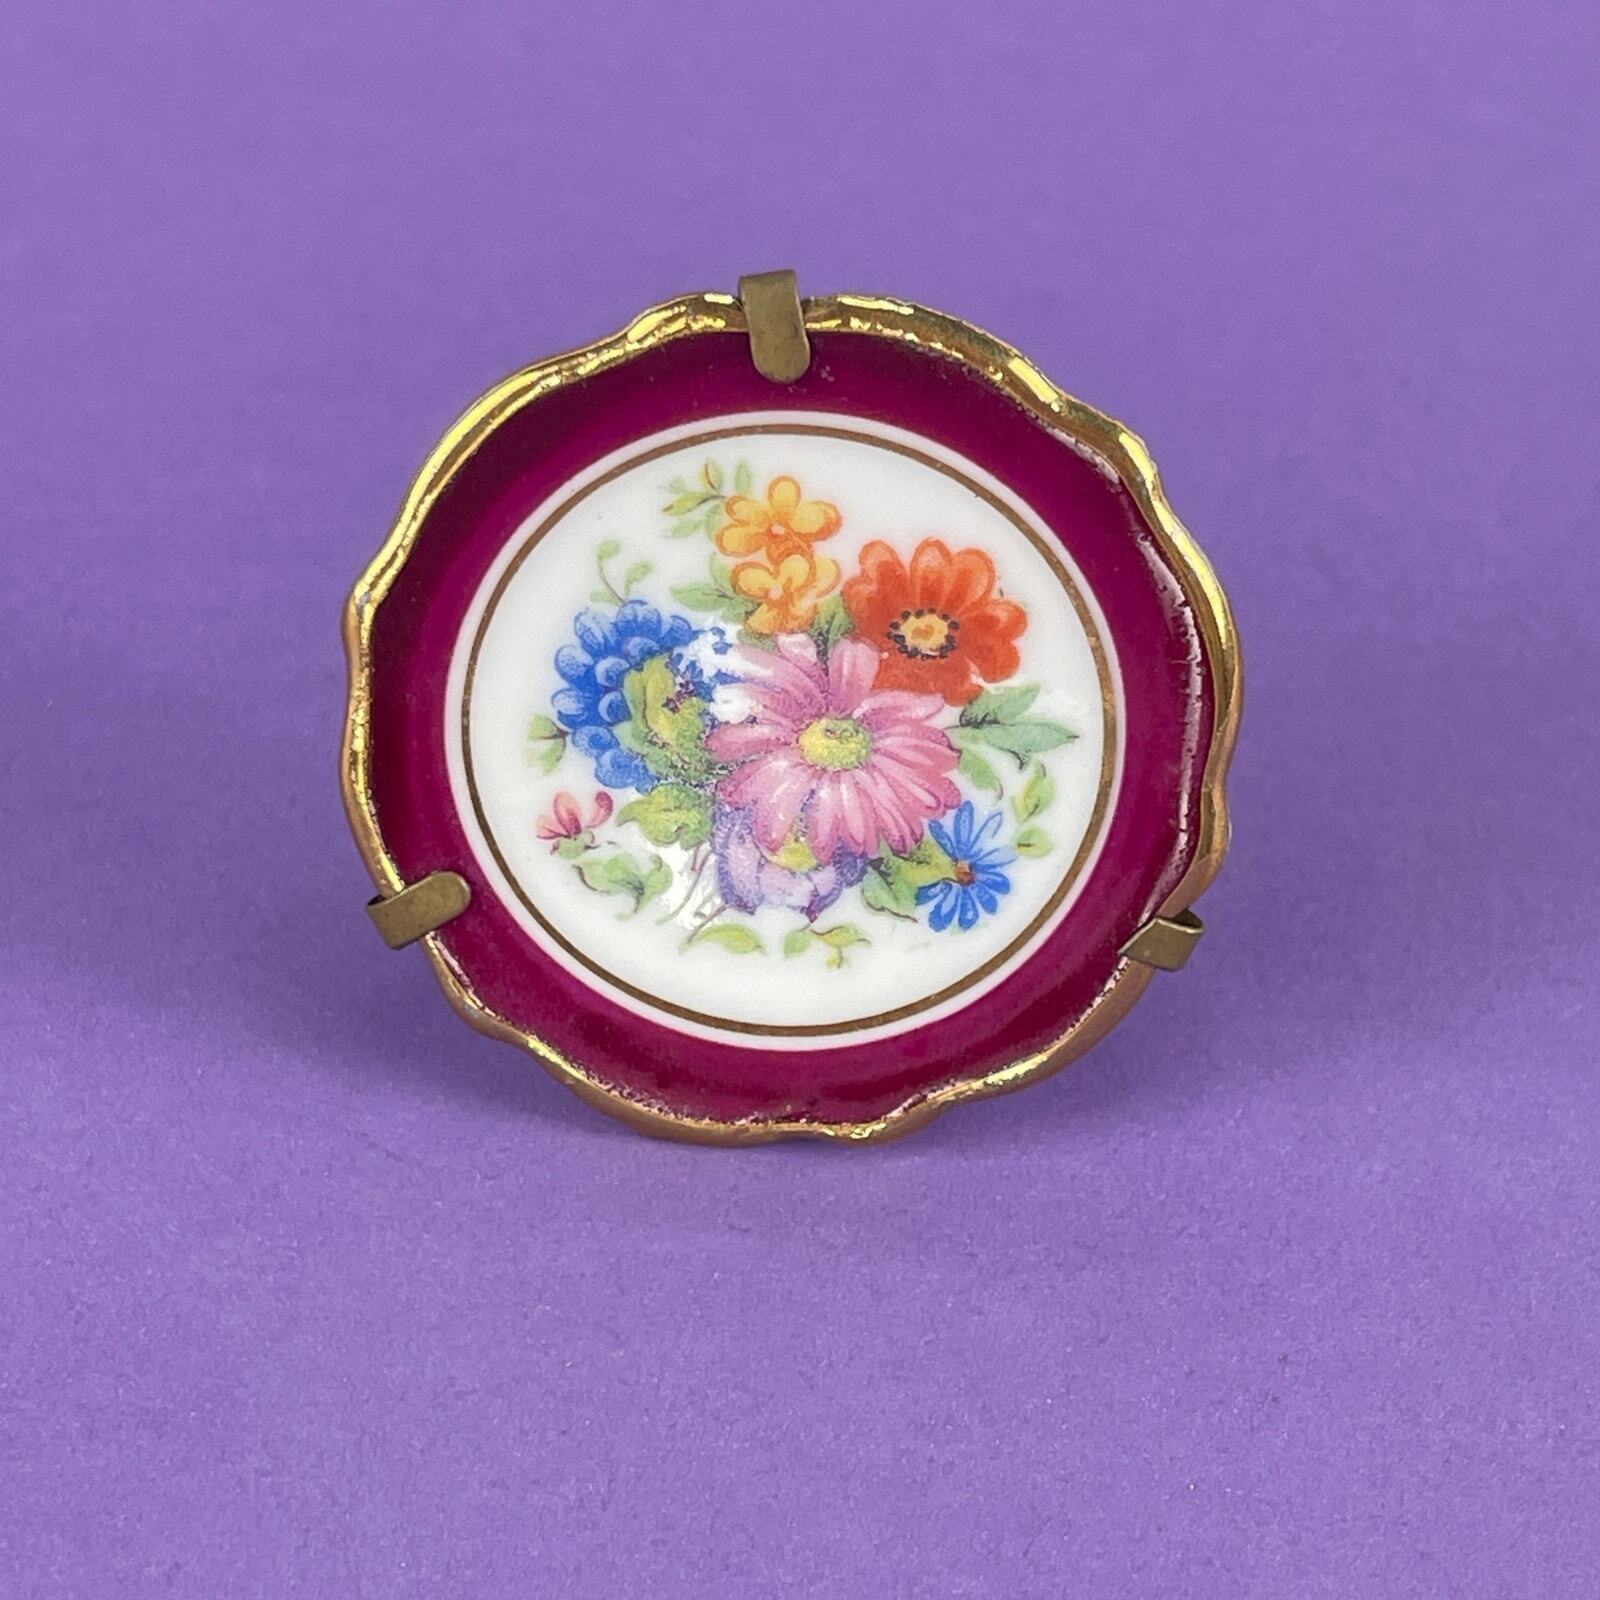 Vintage Limoges Miniature Mini Porcelain Gold Trim Floral Plate 1 7/8”